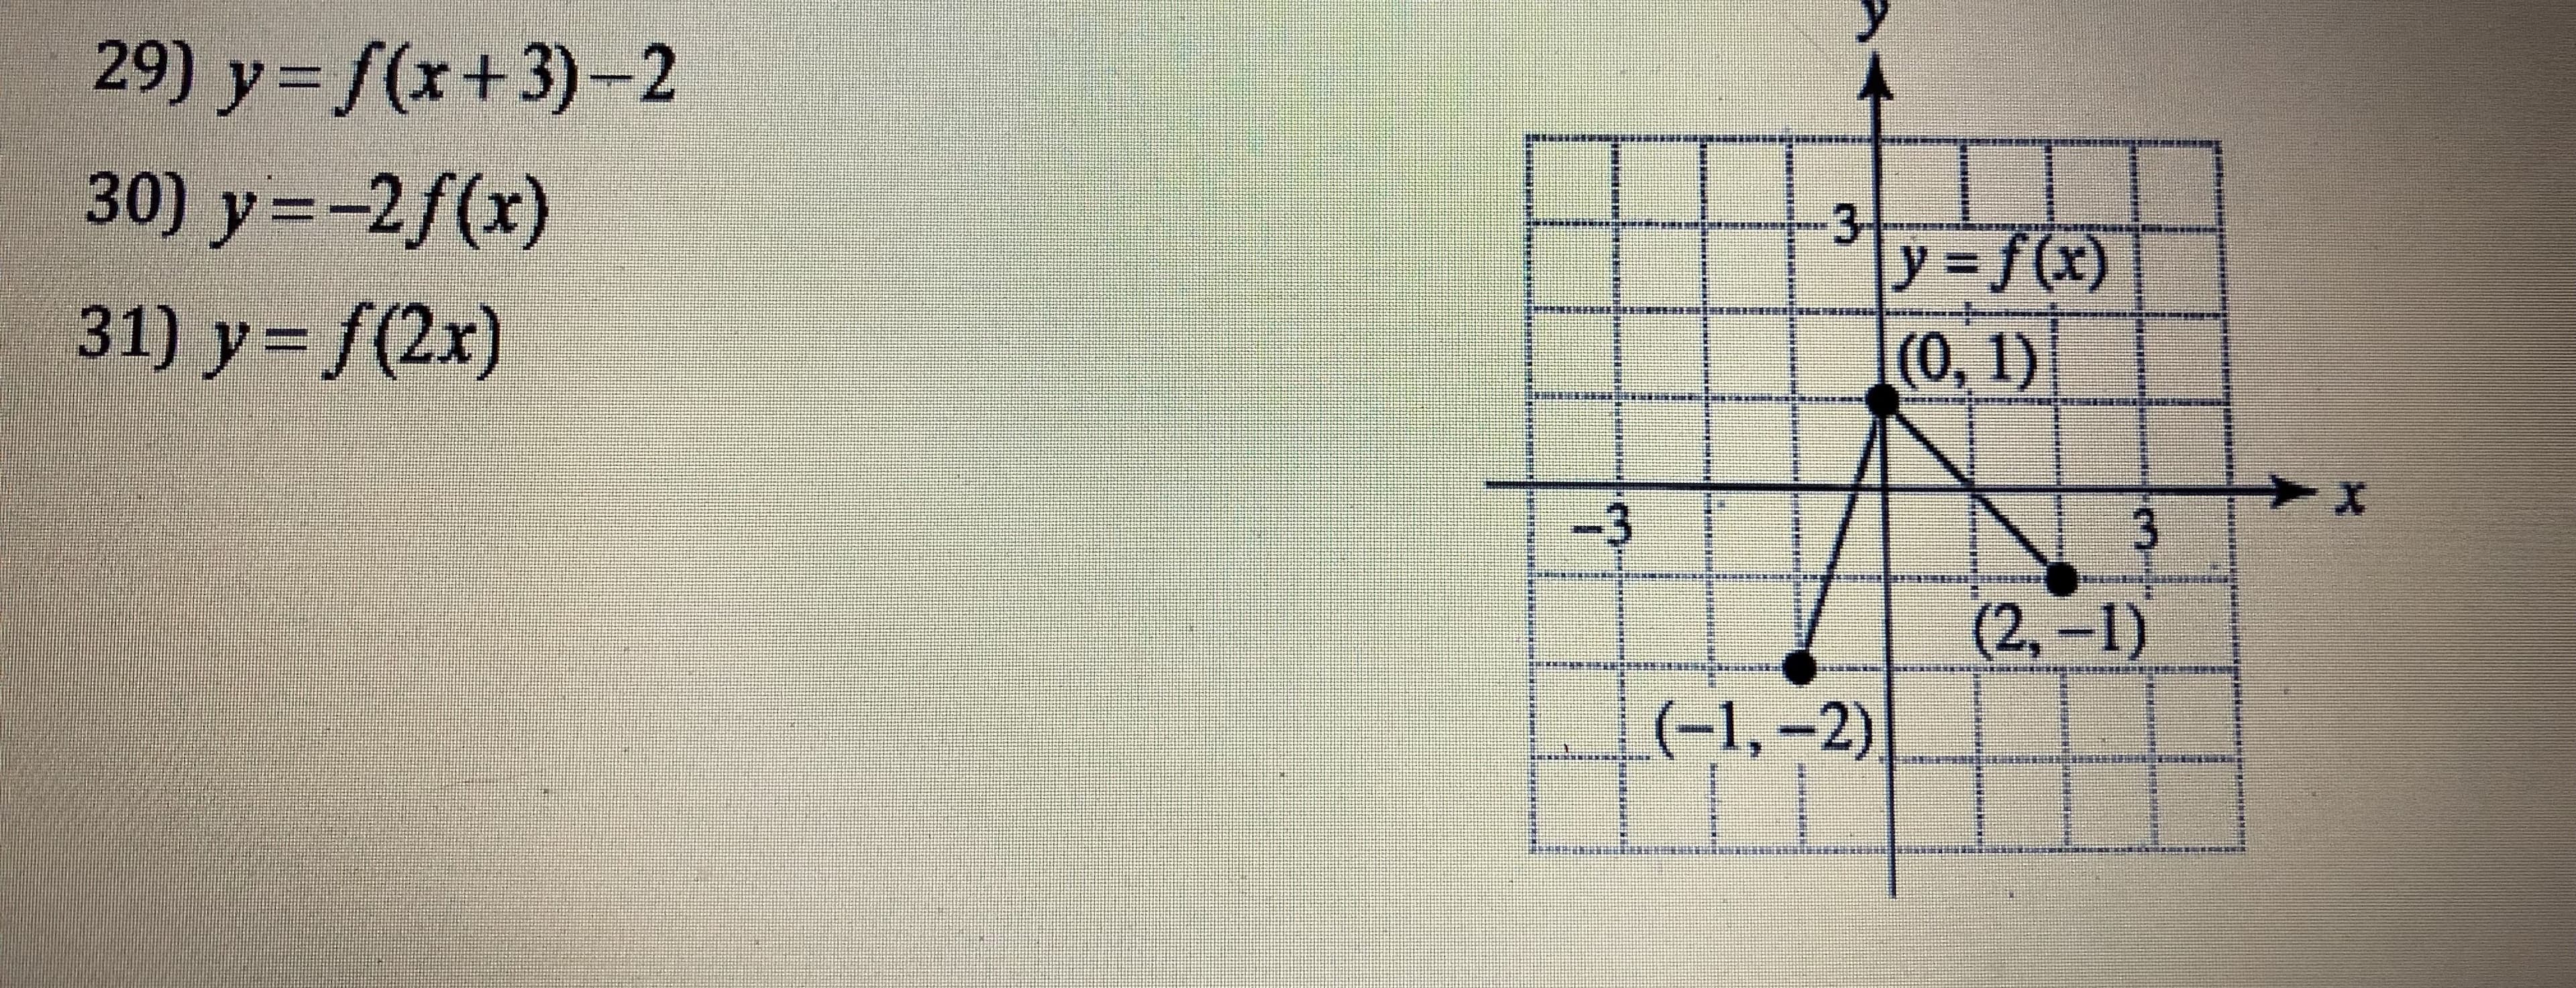 29) y=f(x+3)-2
30) y=-2f(x)
31) y-f(2x)
